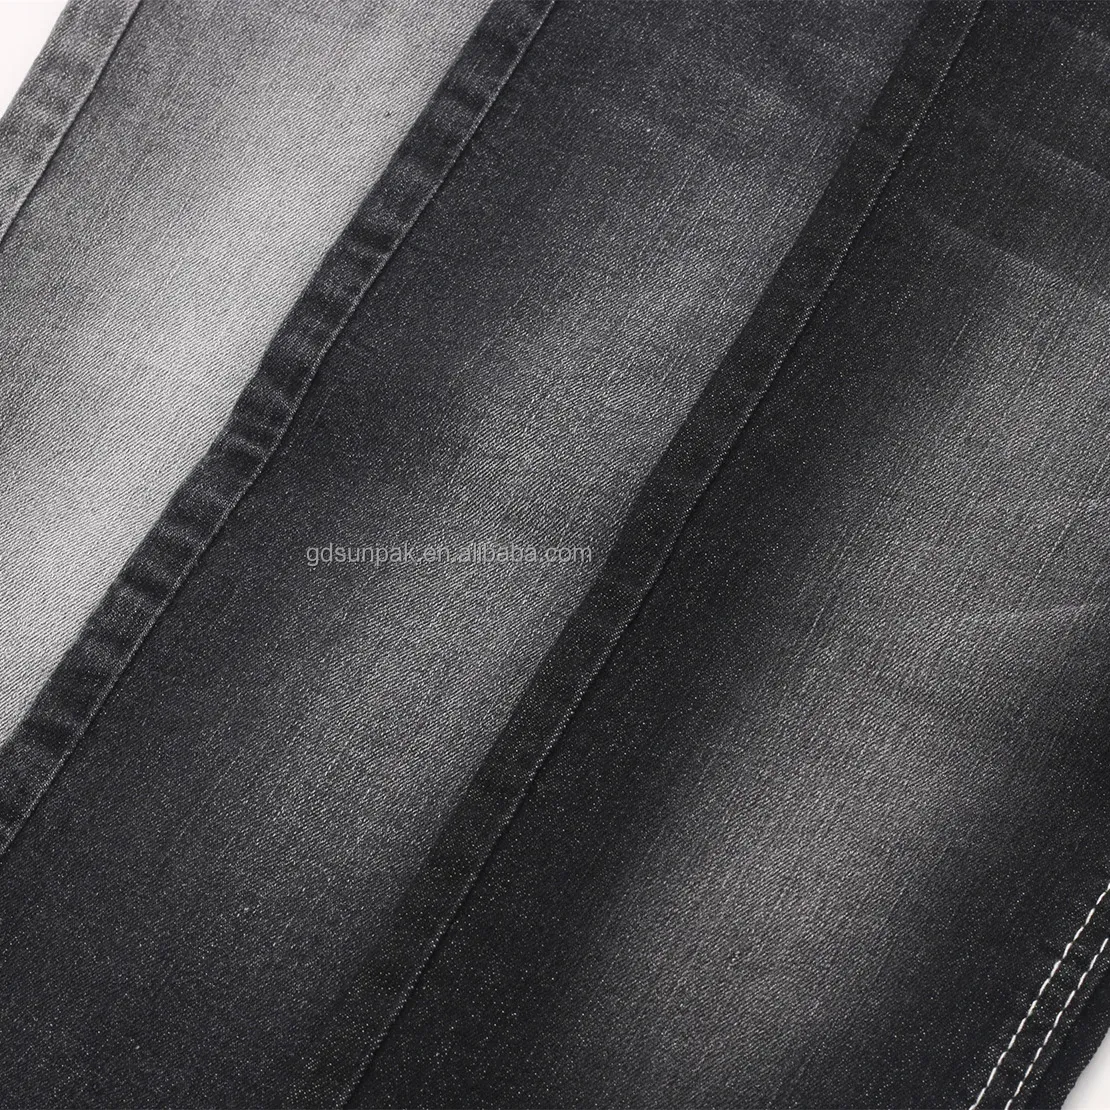 Fabbrica intero prezzo di vendita buona qualità 9.3oz 170cm bella curvatura Slub alta elasticizzato indaco zolfo nero Denim tessuto Jeans P9383-1 #